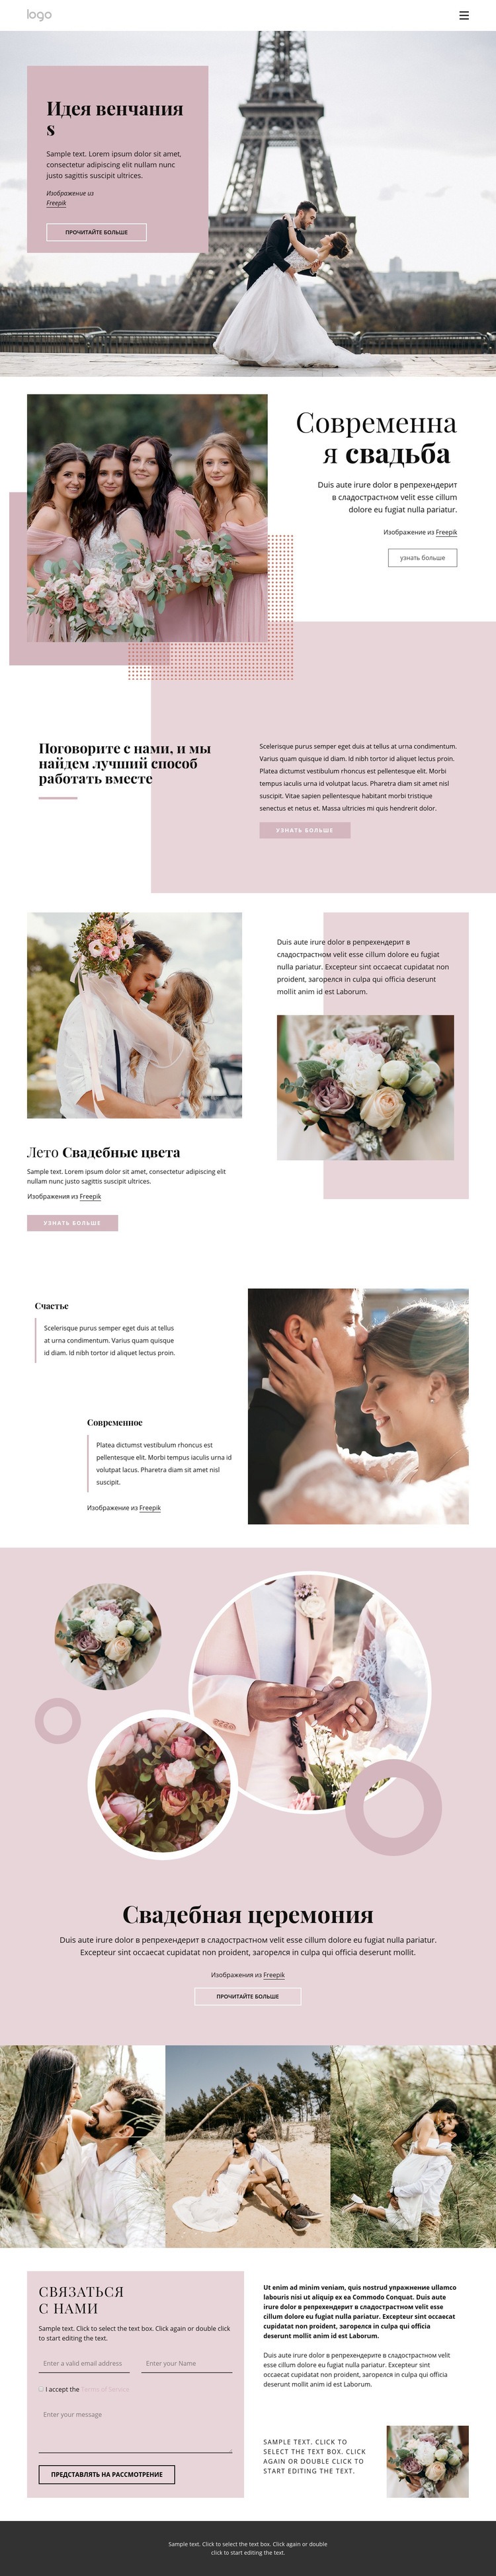 Уникальная свадебная церемония HTML5 шаблон